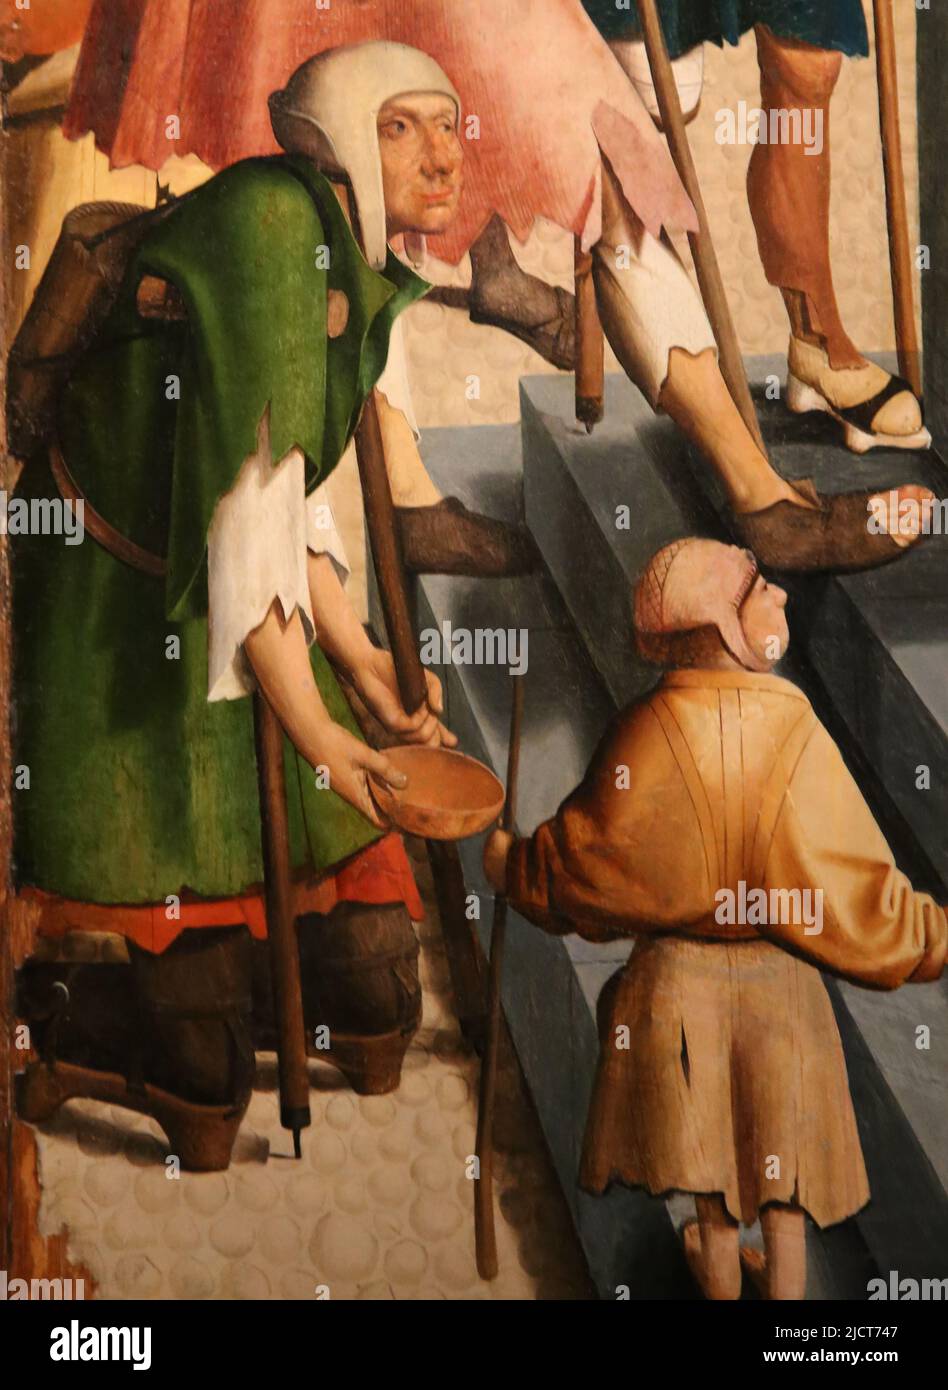 Les sept œuvres de Mercy. Maître d'Alkmaa, 1504. Huile sur le panneau. Détail de l'un des panneaux. Rijksmuseum. Amsterdam. Pays-Bas. Banque D'Images